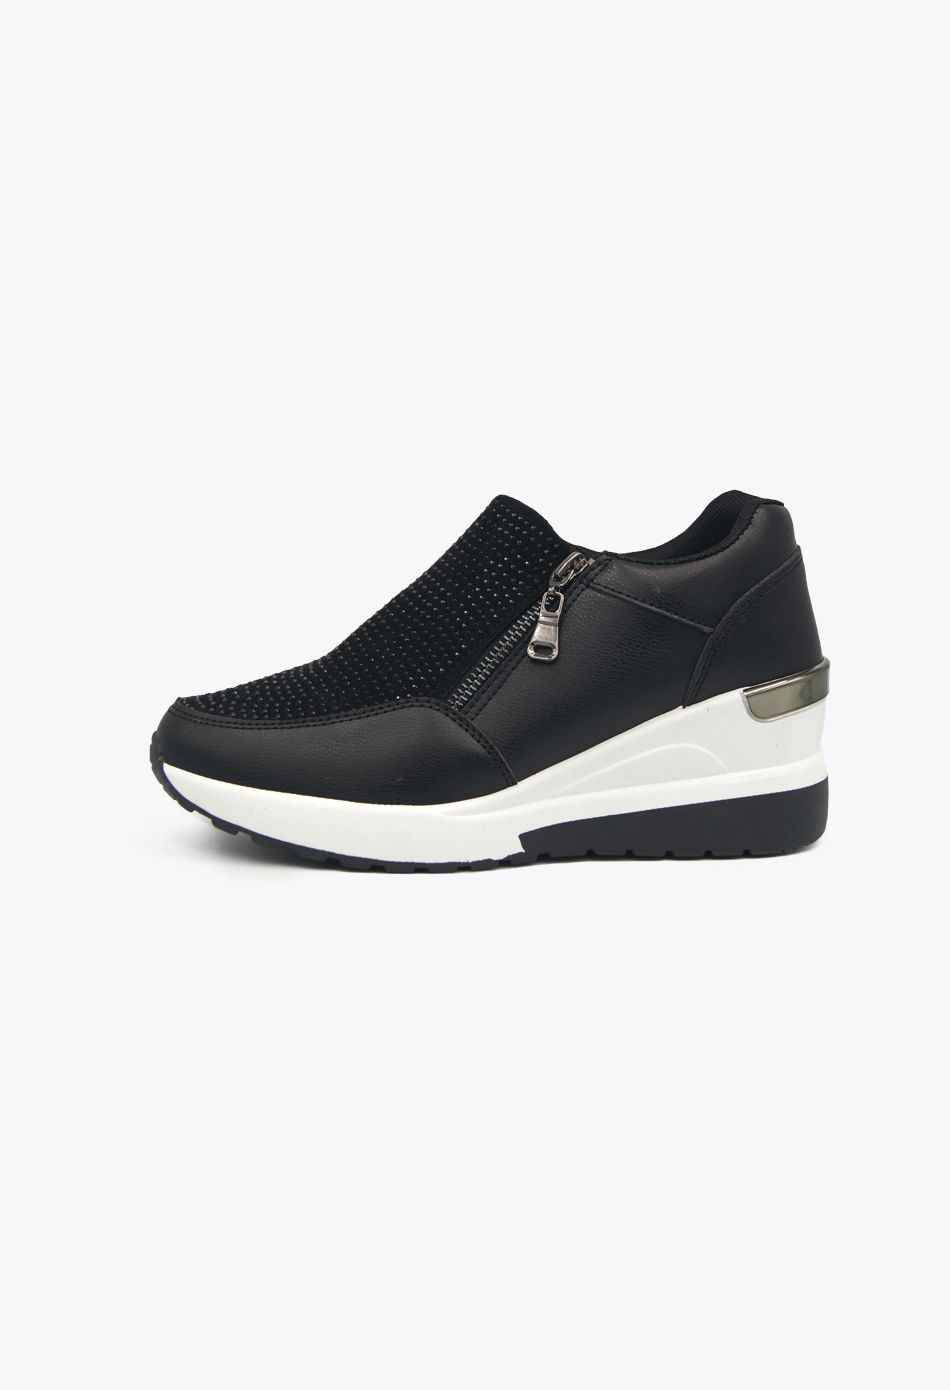 Πέδιλα στρινγκ με αγκράφα Μαύρο / TZ675-black Ανοιχτά Παπούτσια joya.gr